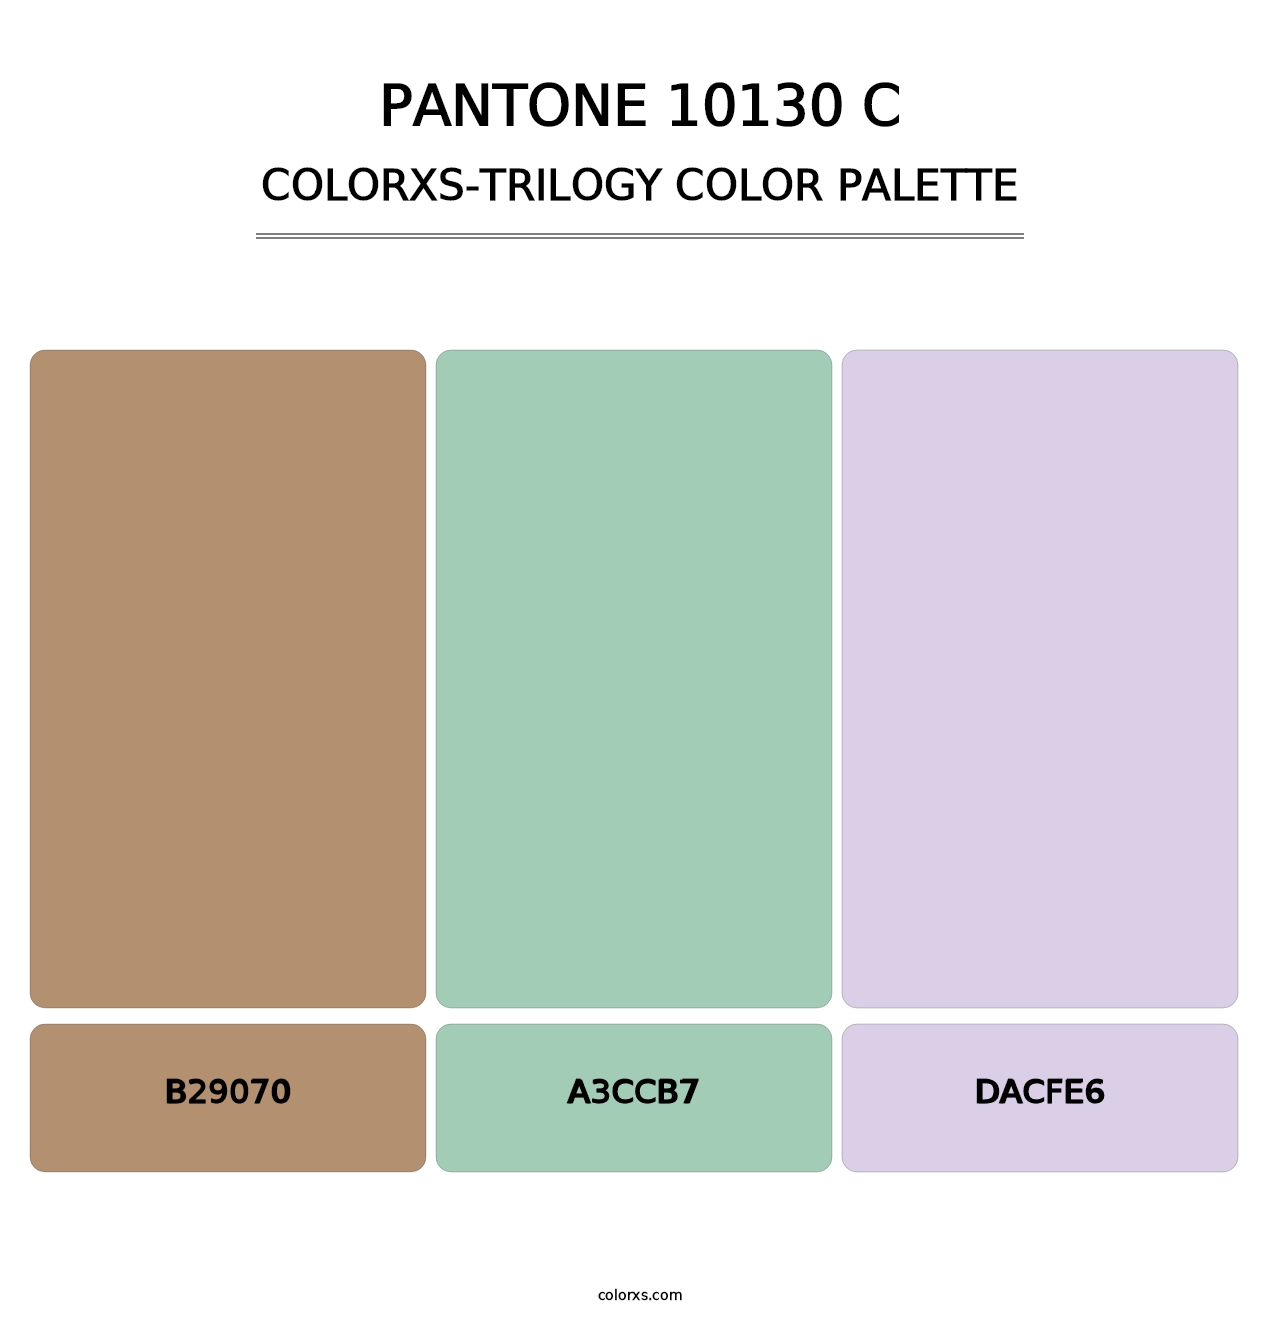 PANTONE 10130 C - Colorxs Trilogy Palette